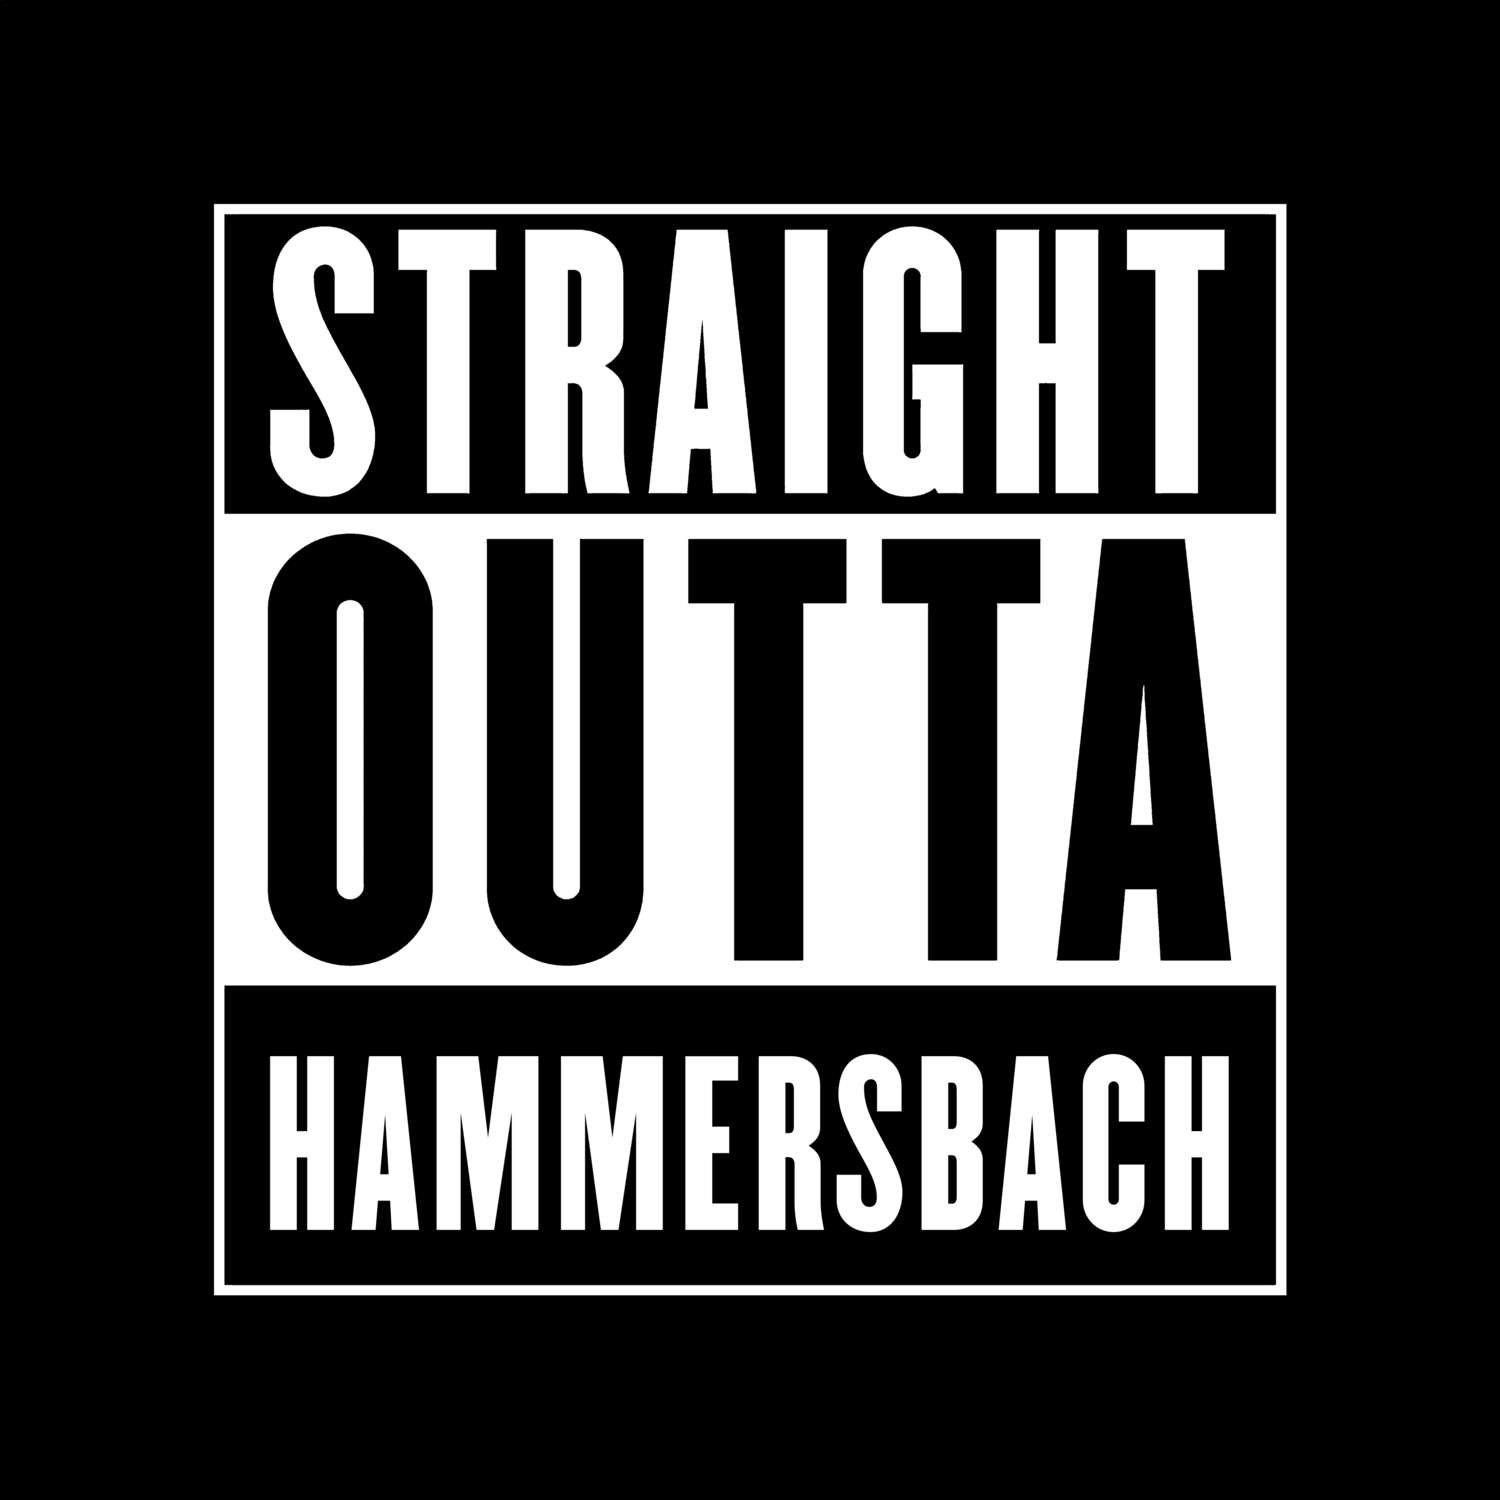 Hammersbach T-Shirt »Straight Outta«